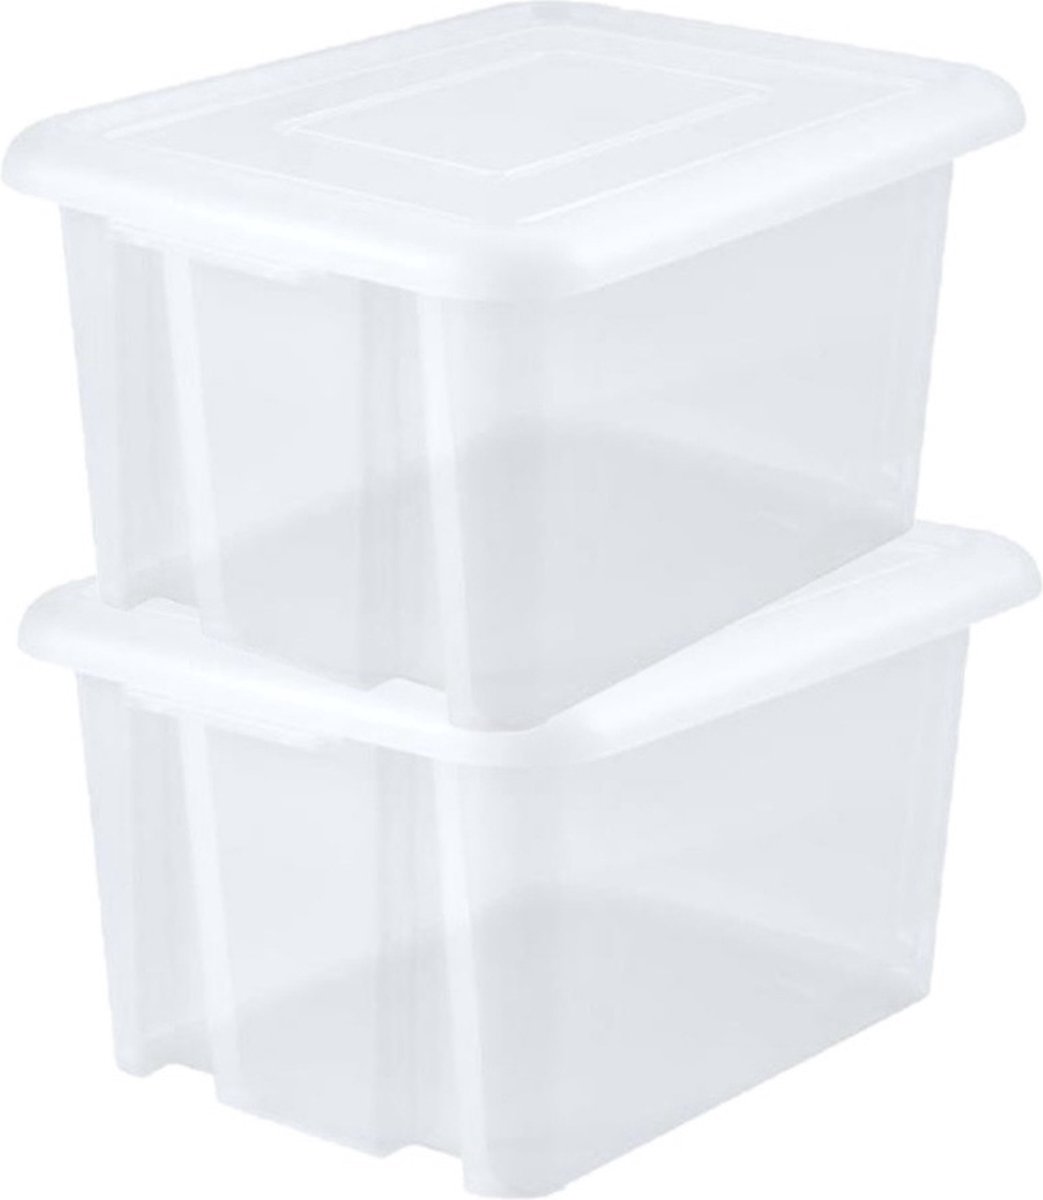 12x stuks kunststof opbergboxen/opbergdozen wit transparant L65 x B50 x H36 cm stapelbaar - Voorraad/opberg boxen/kisten/bakken met deksel